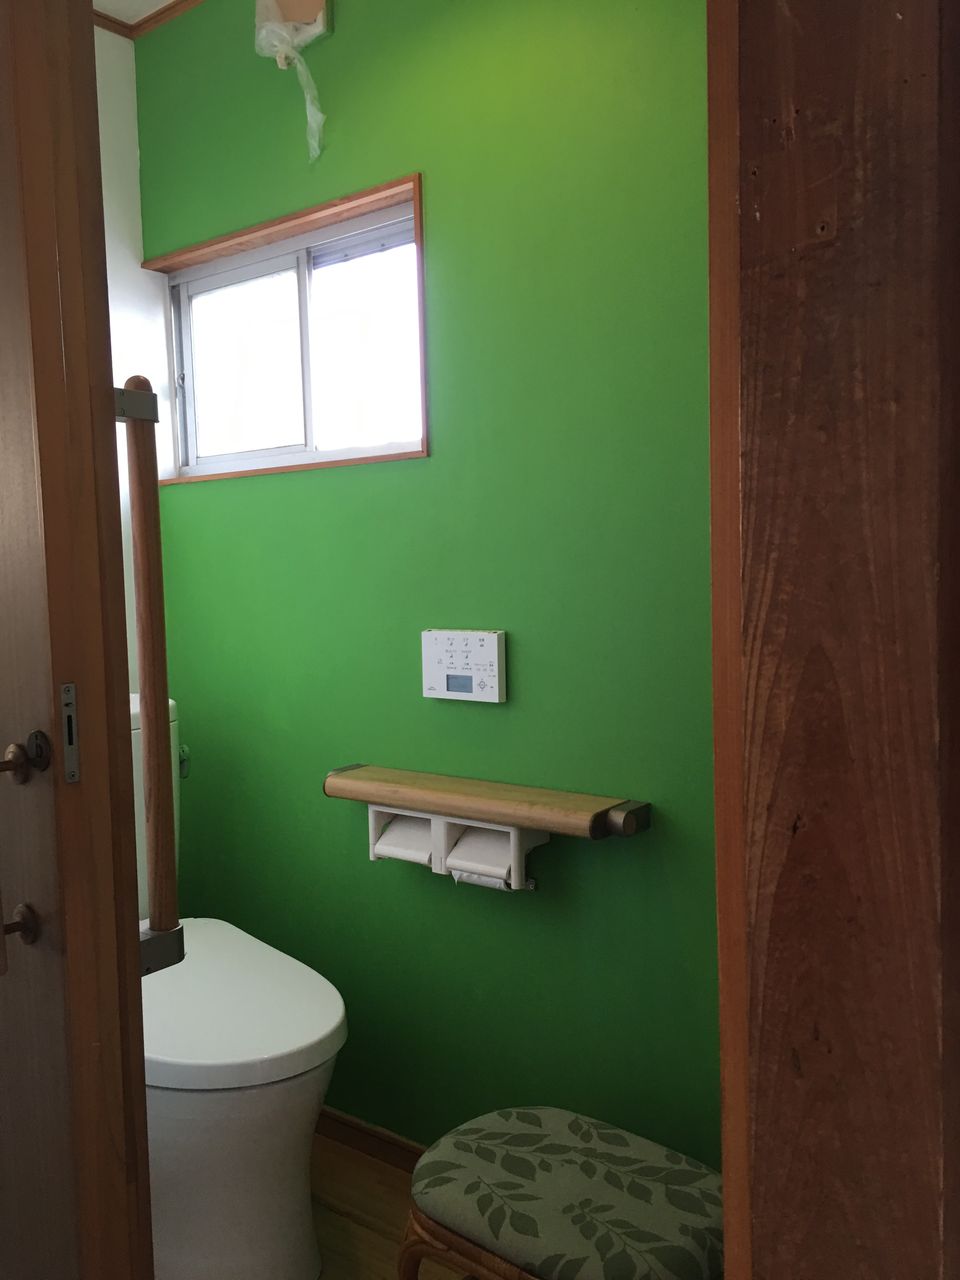 Diy シェアハウスのトイレの壁紙を塗装してみました リノベ 万事屋ブログ